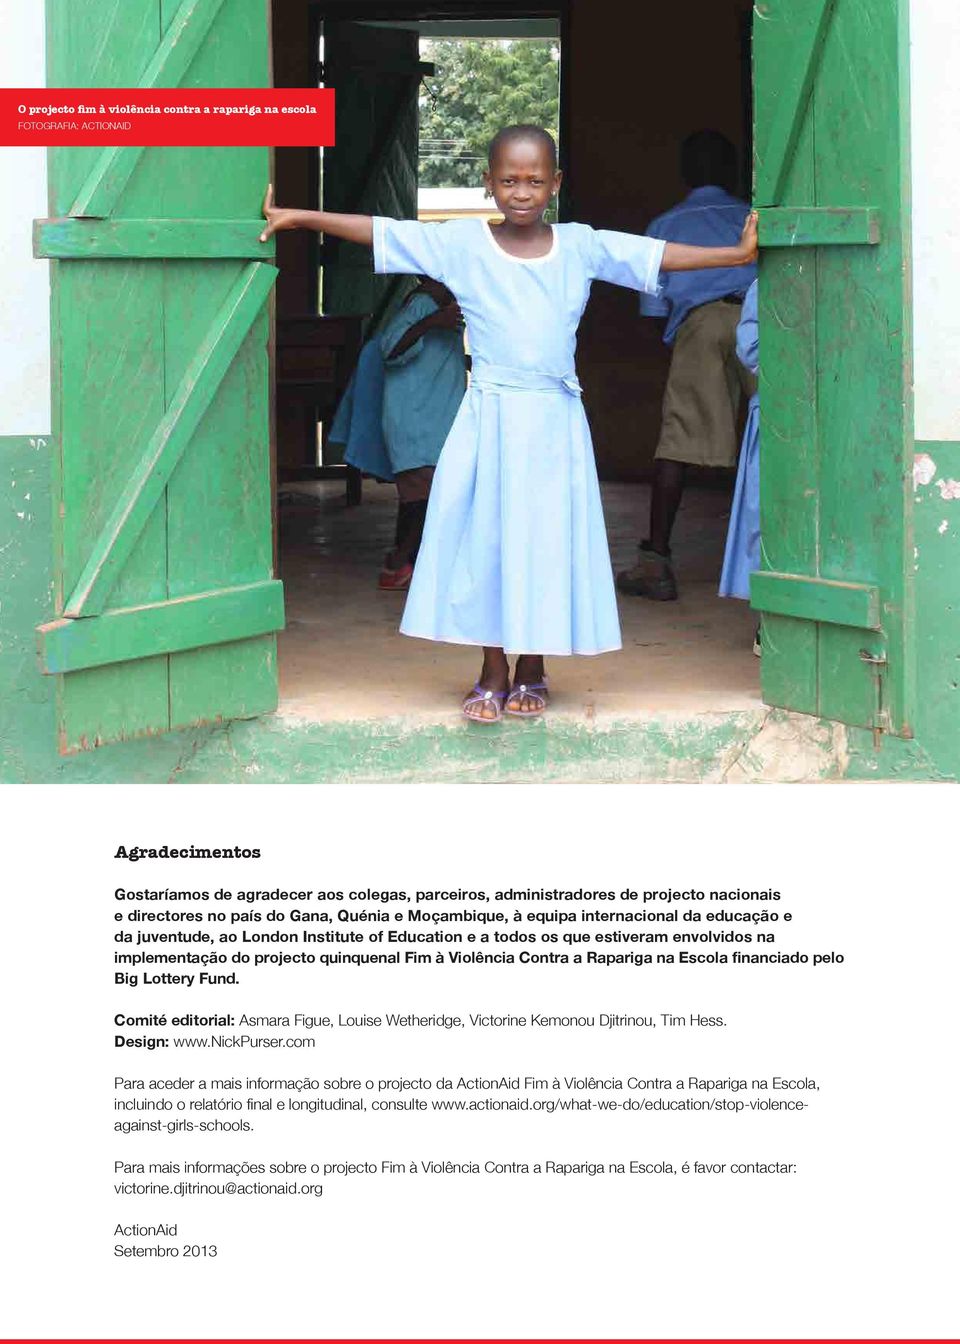 Moçambique, à equipa internacional da educação e da juventude, ao London Institute of Education e a todos os que estiveram envolvidos na implementação do projecto quinquenal Fim à Violência Contra a